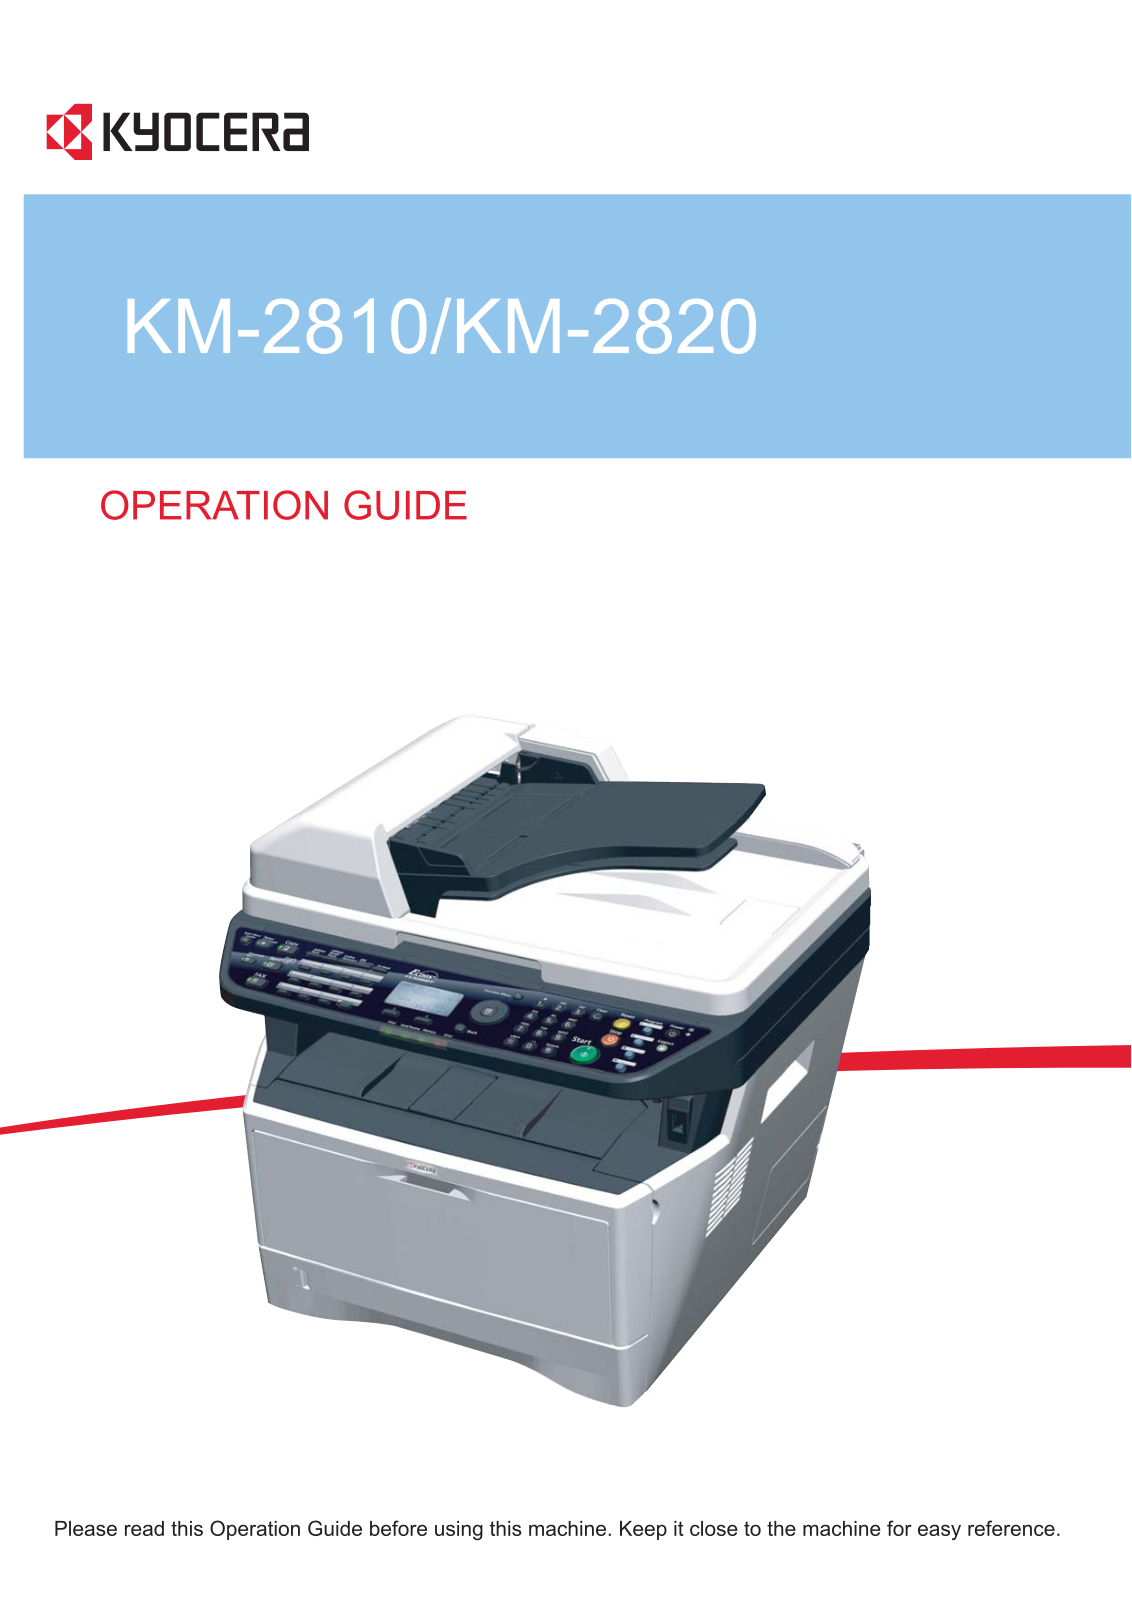 Kyocera KM-2820, KM-2810 Manual